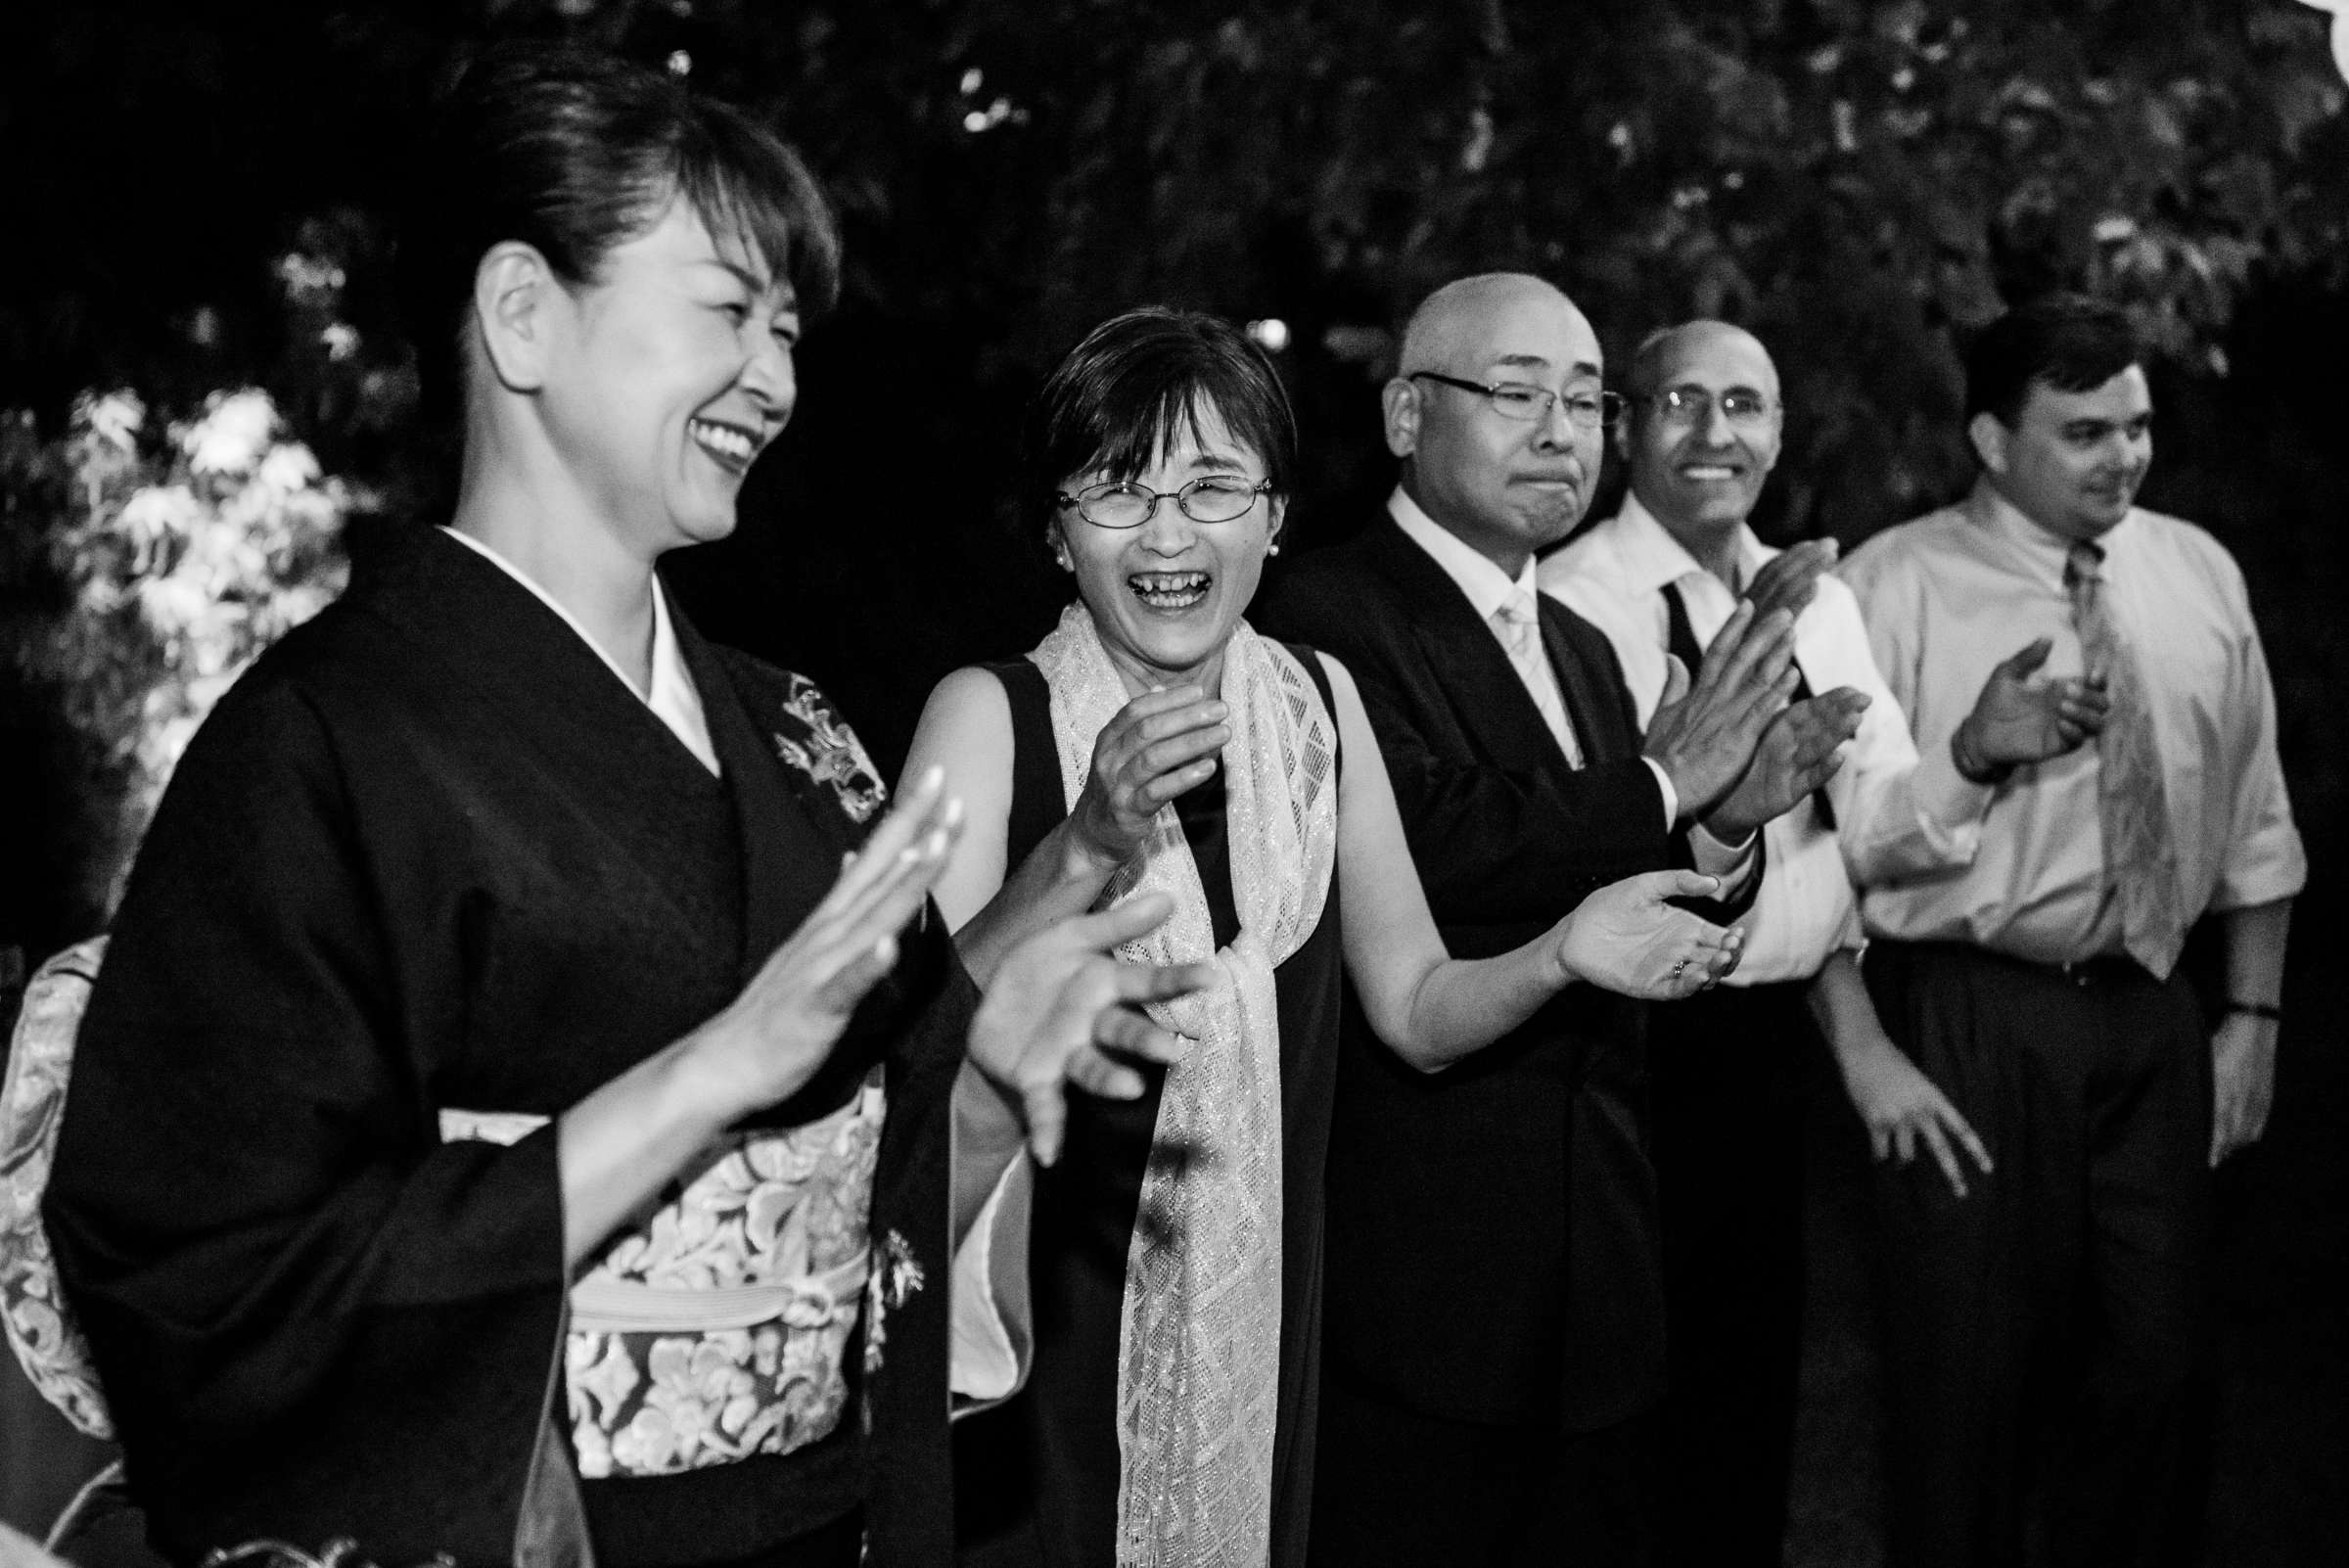 Hyatt Regency Mission Bay Wedding, Mizuki and Steven Wedding Photo #411493 by True Photography